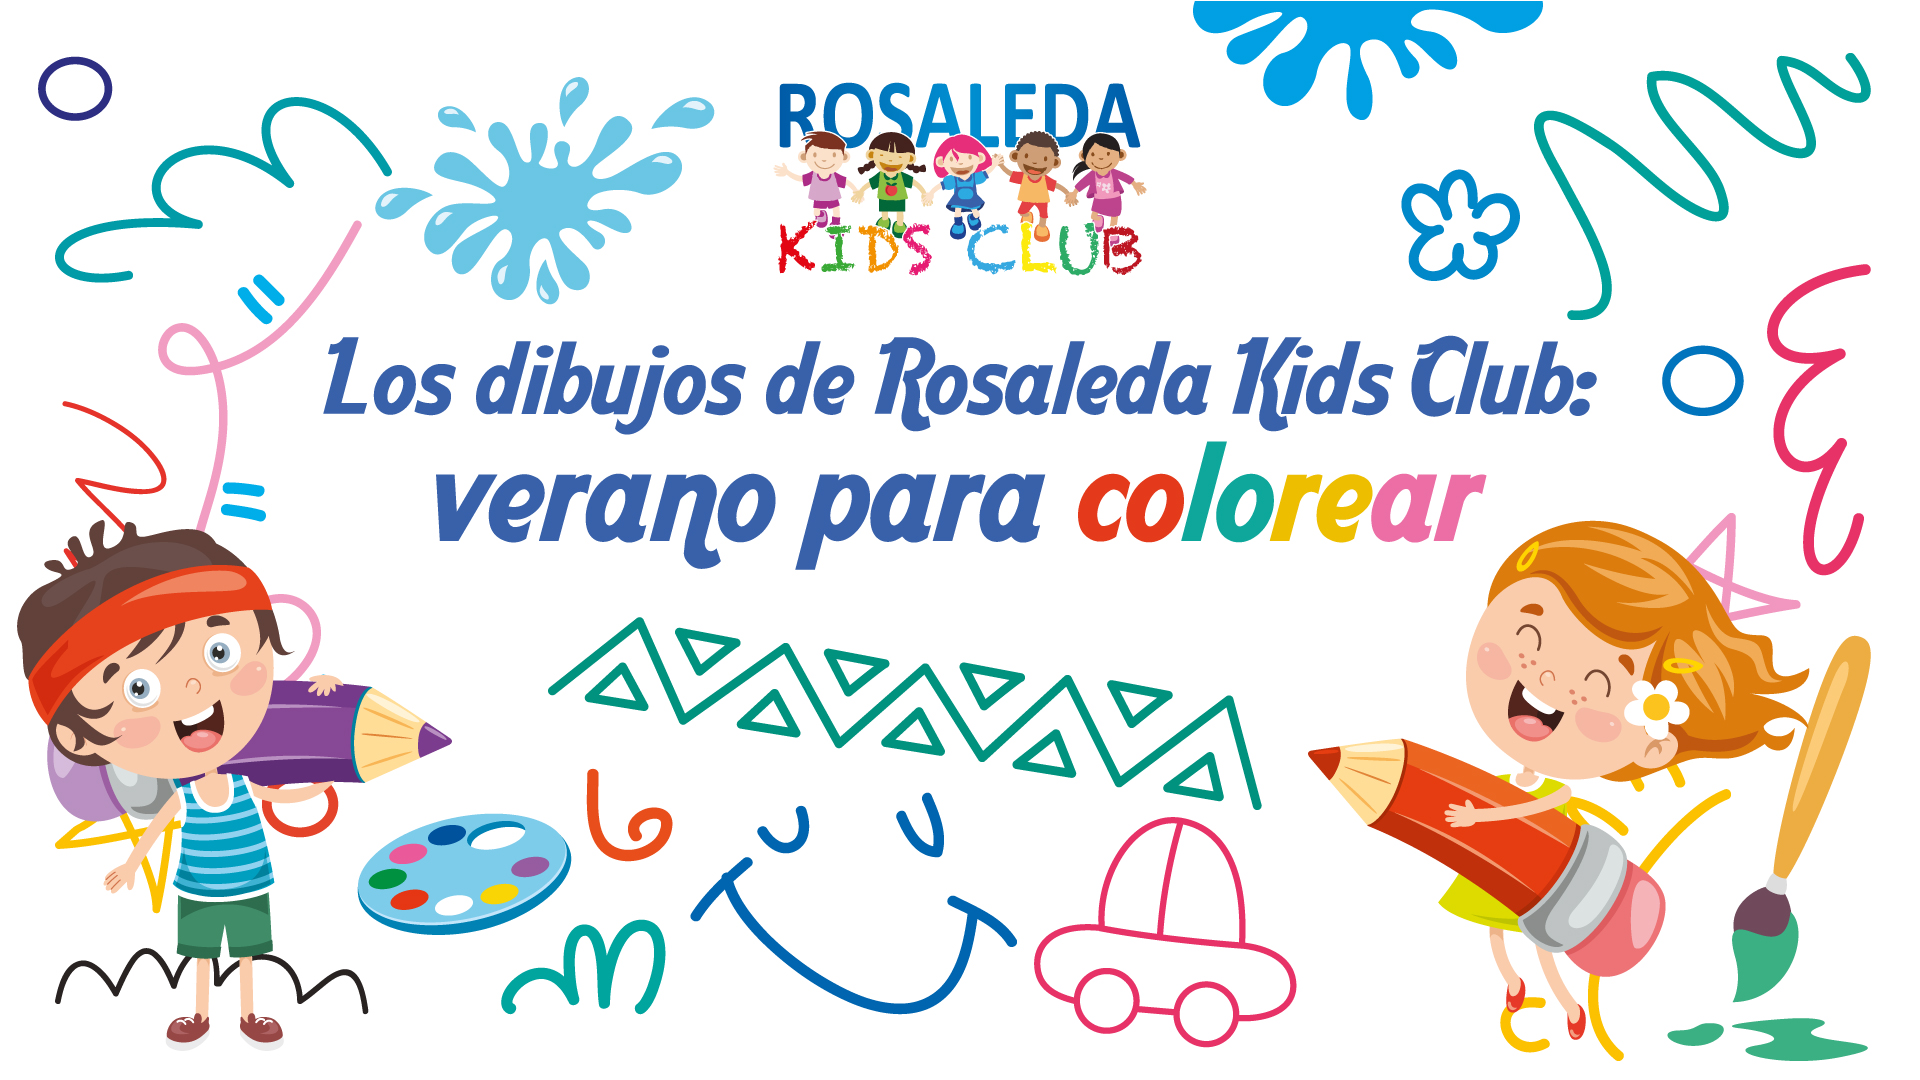 Los dibujos de Rosaleda Kids Club: verano para colorear